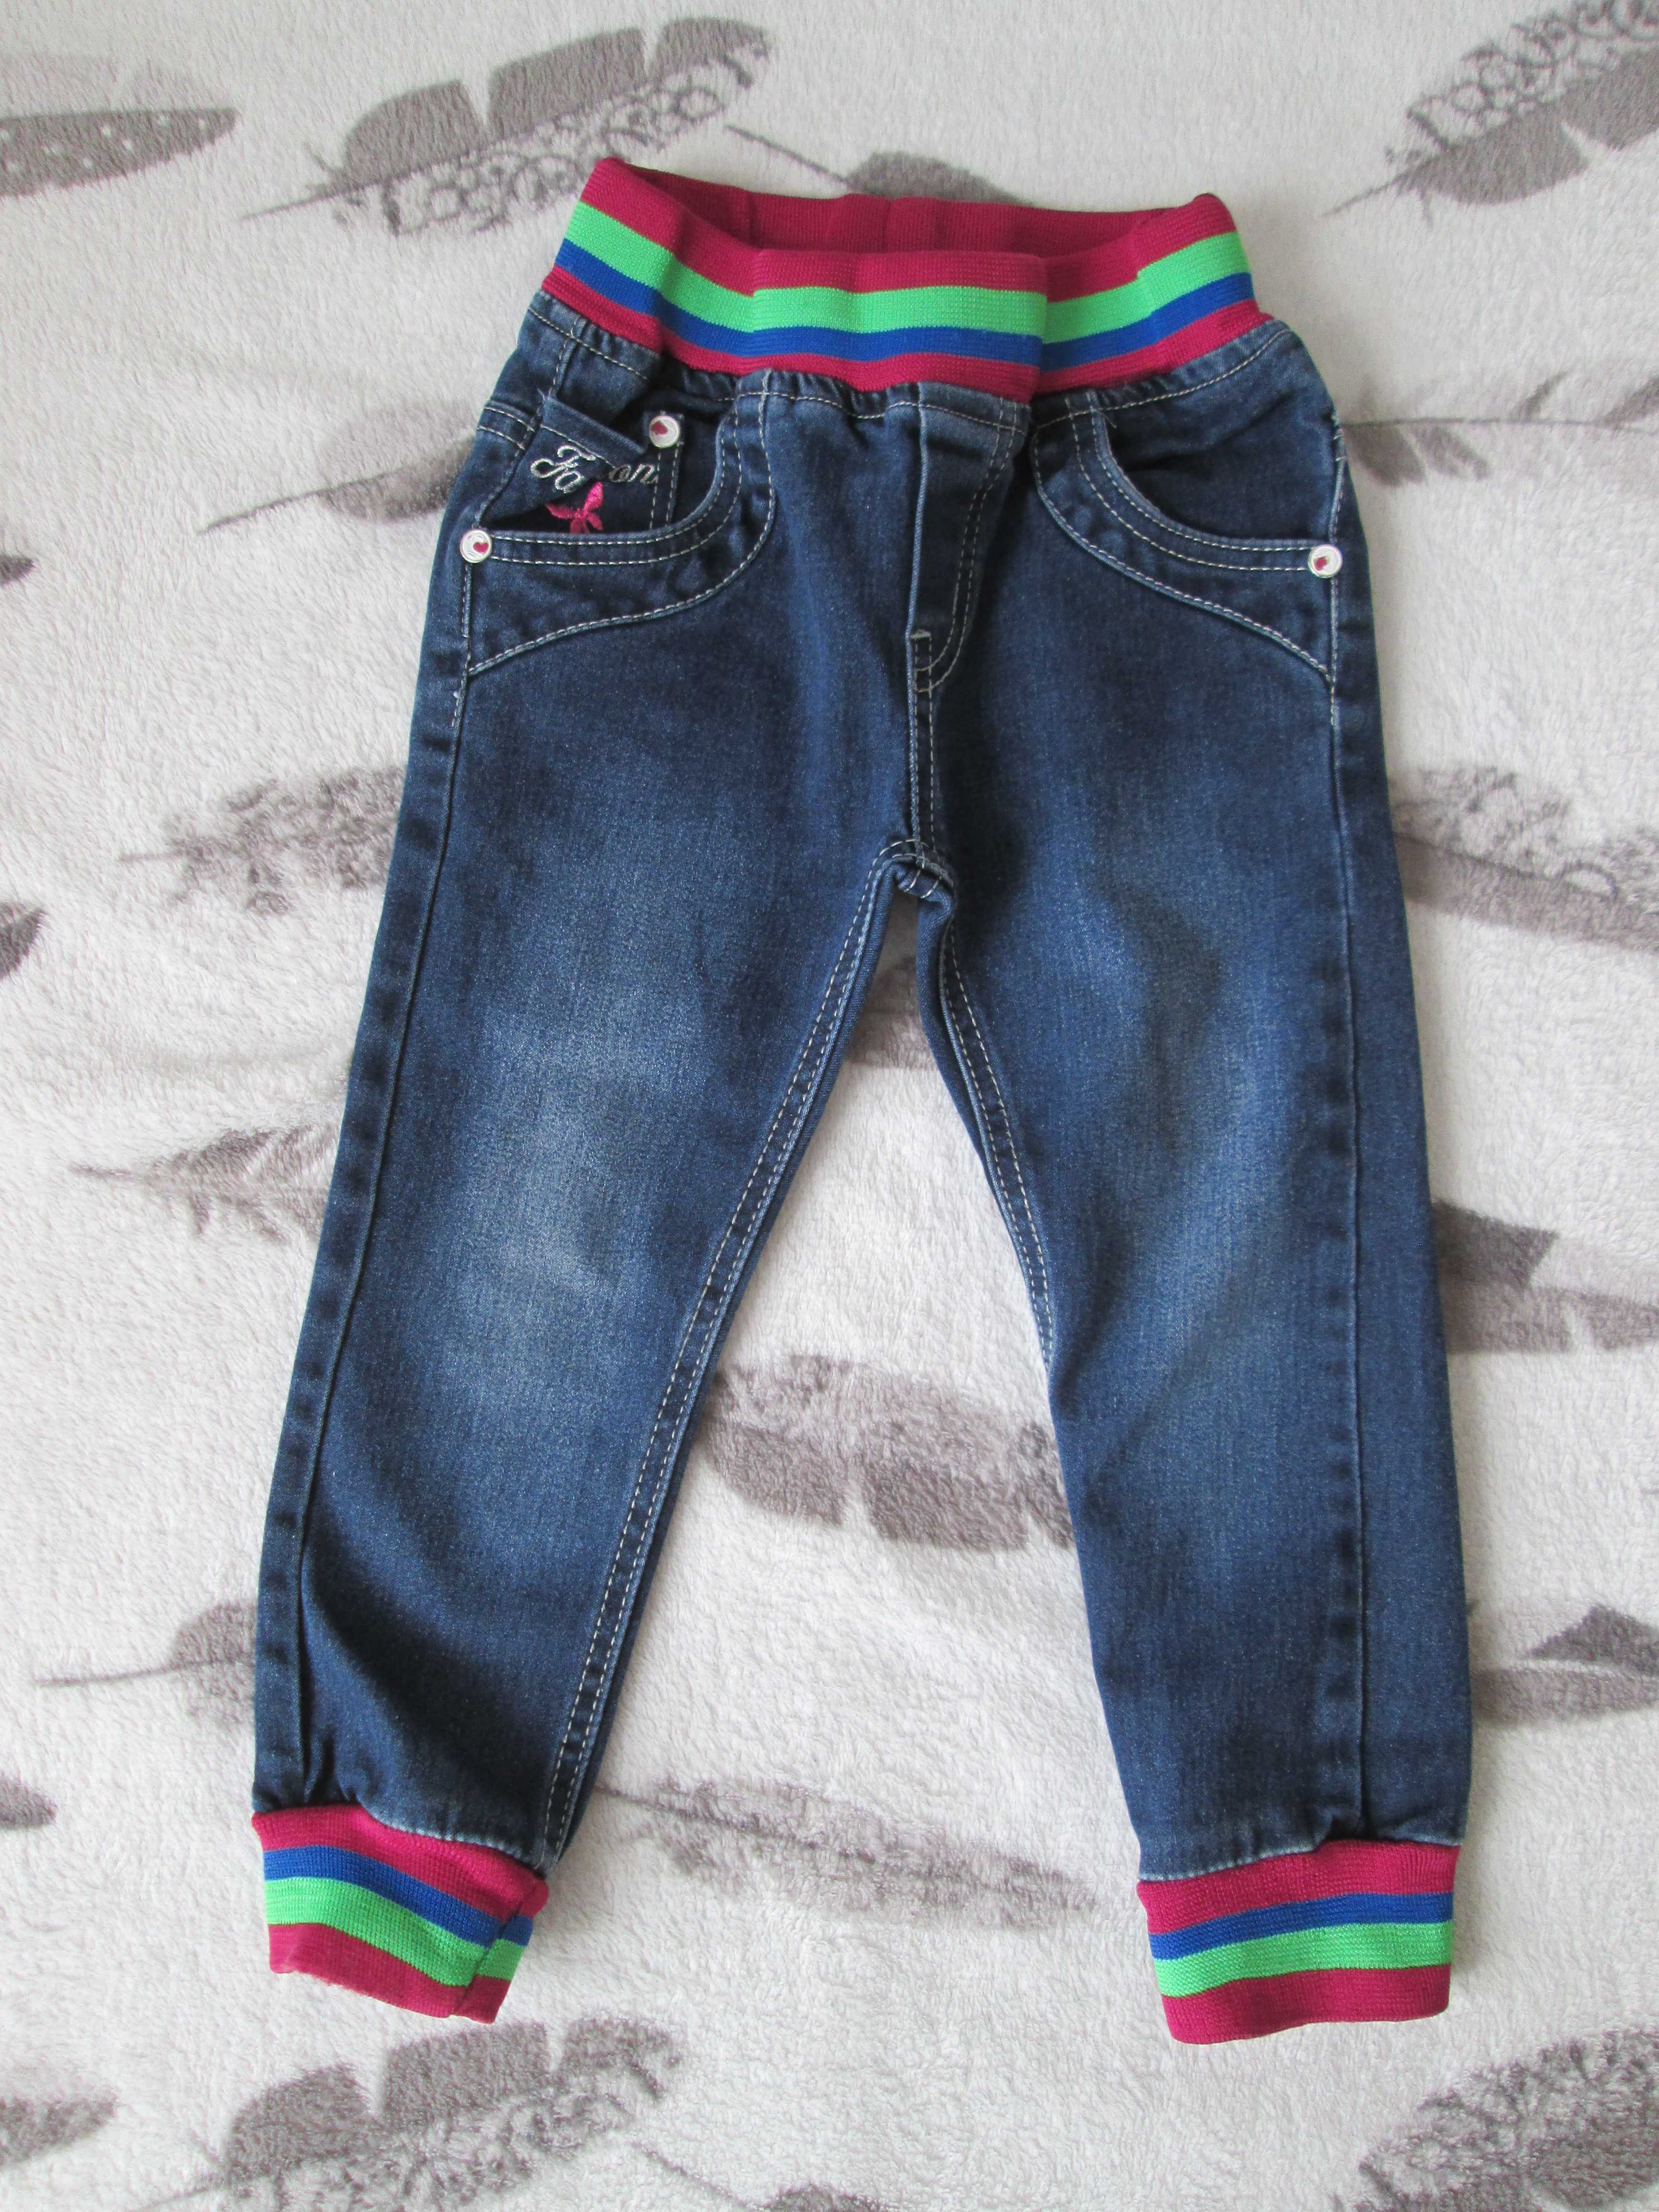 spodnie jeans, dżins, joggery rozmiar 80/86